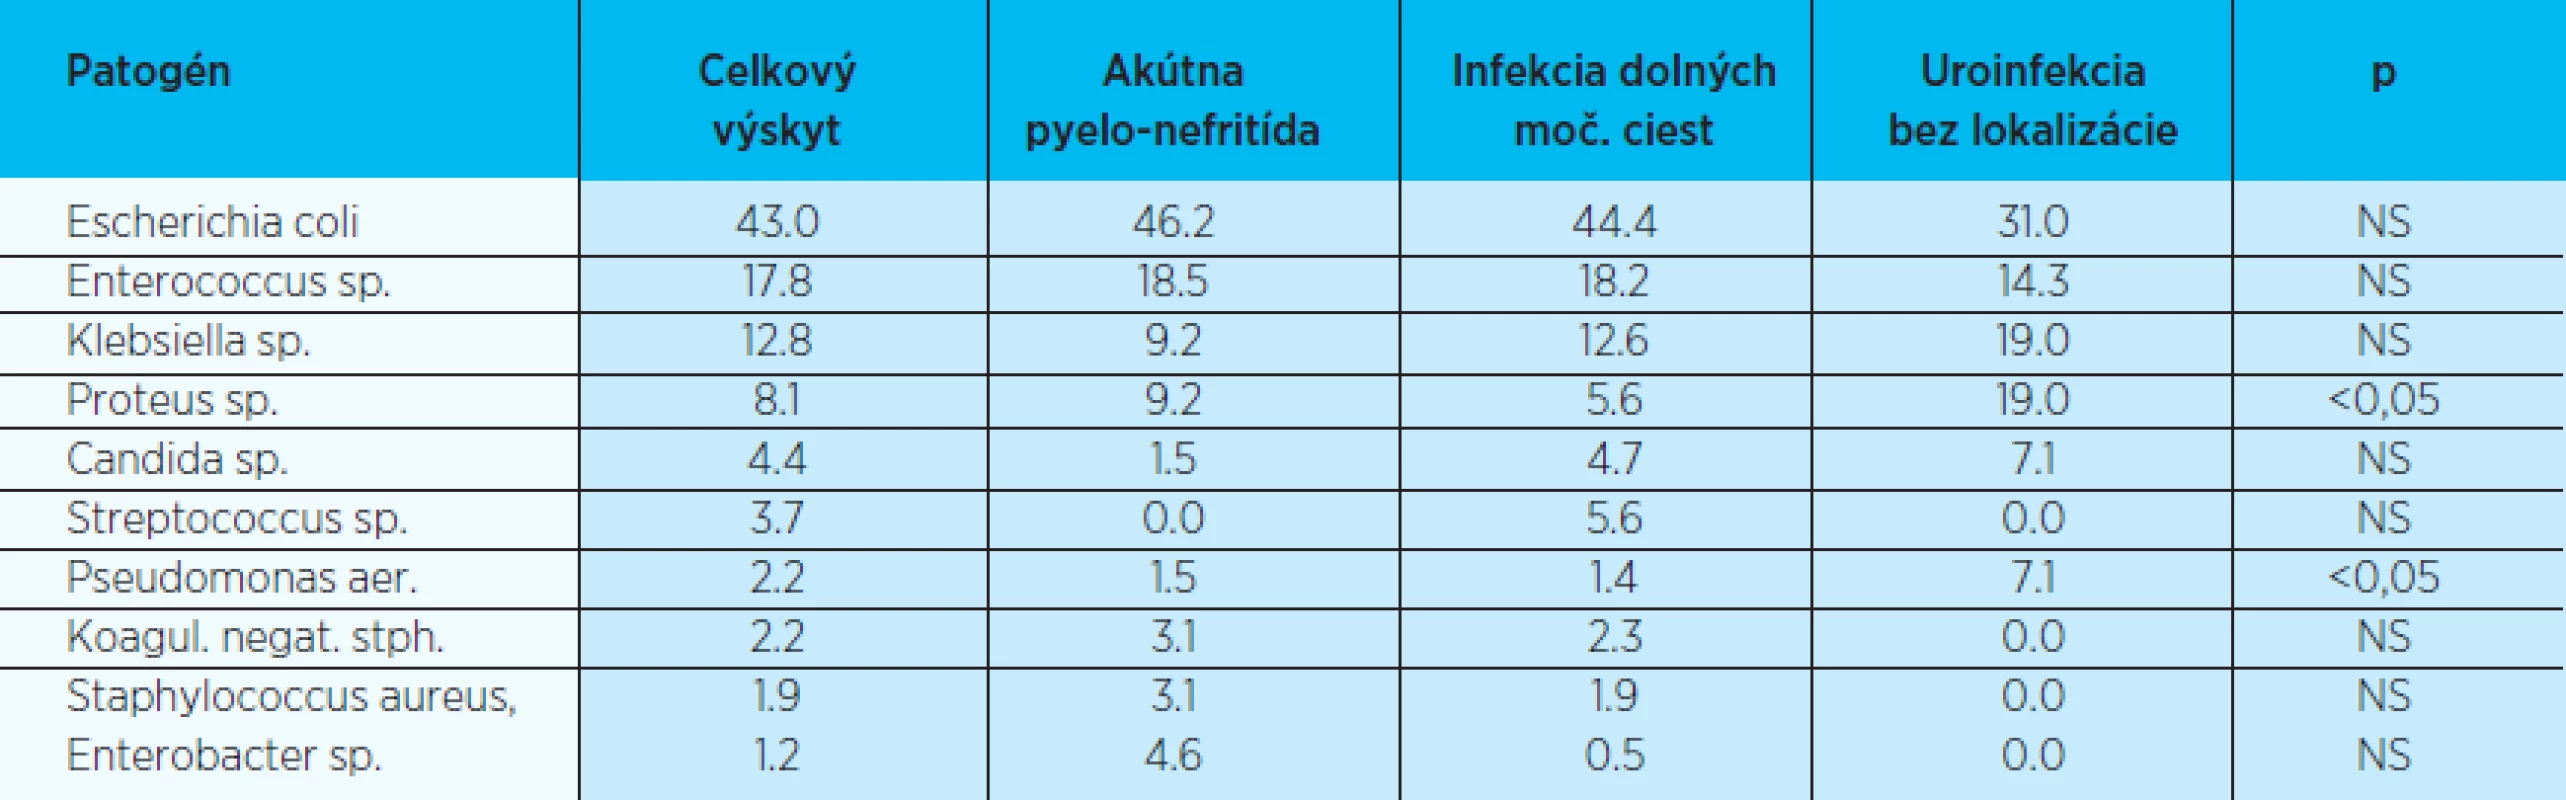 Spektrum uropatogénov podľa klinickej manifestácie (2006-2007; v%)